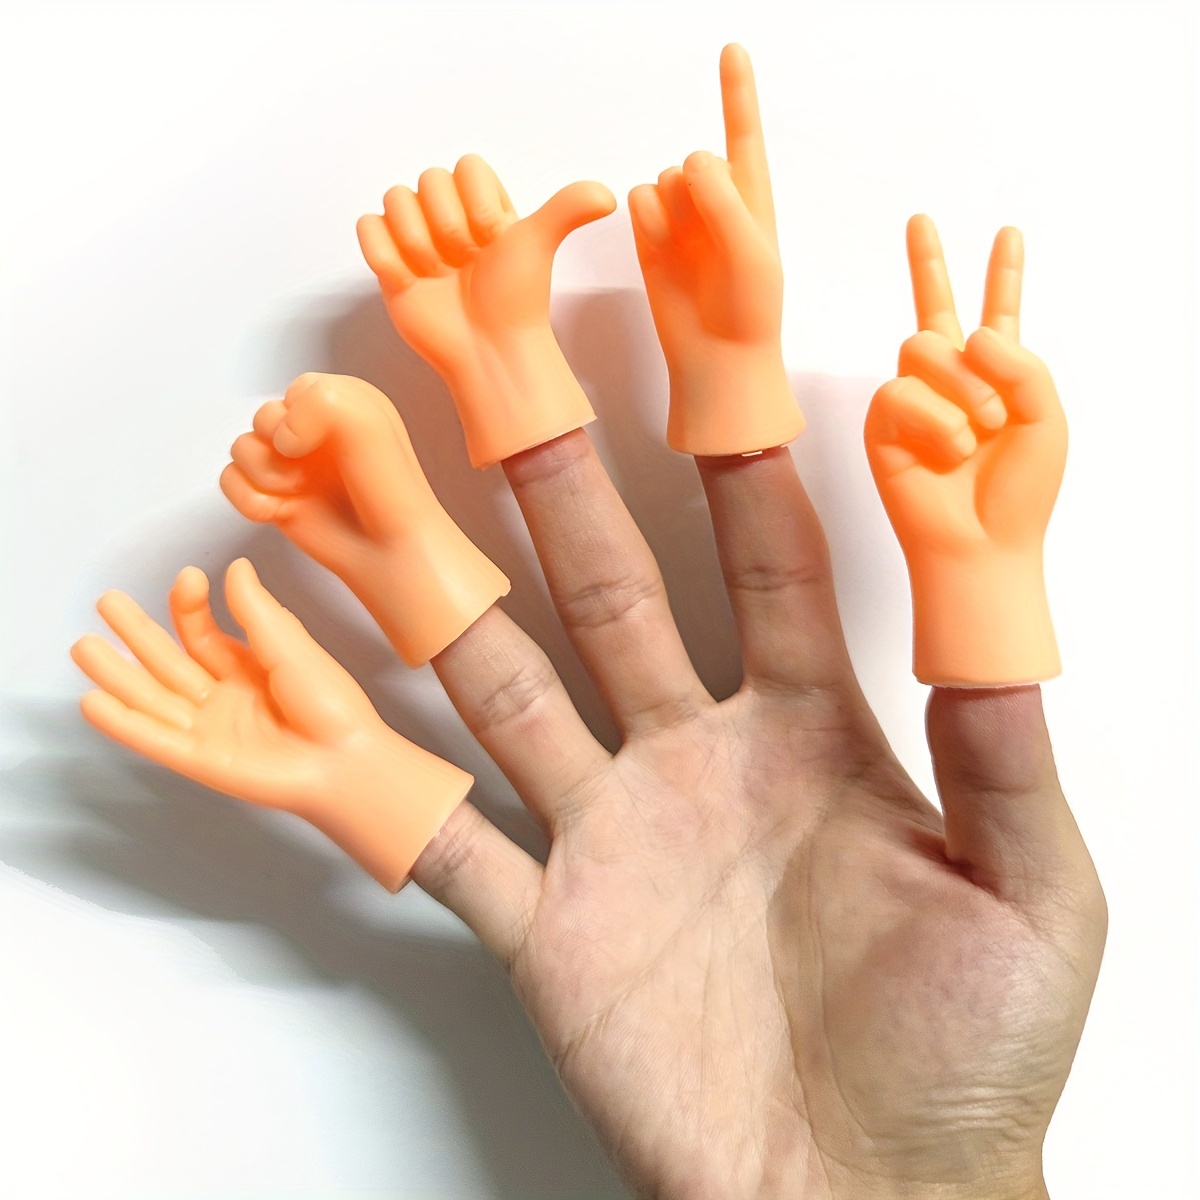 Marionnette dinosaure 5 têtes pour doigts